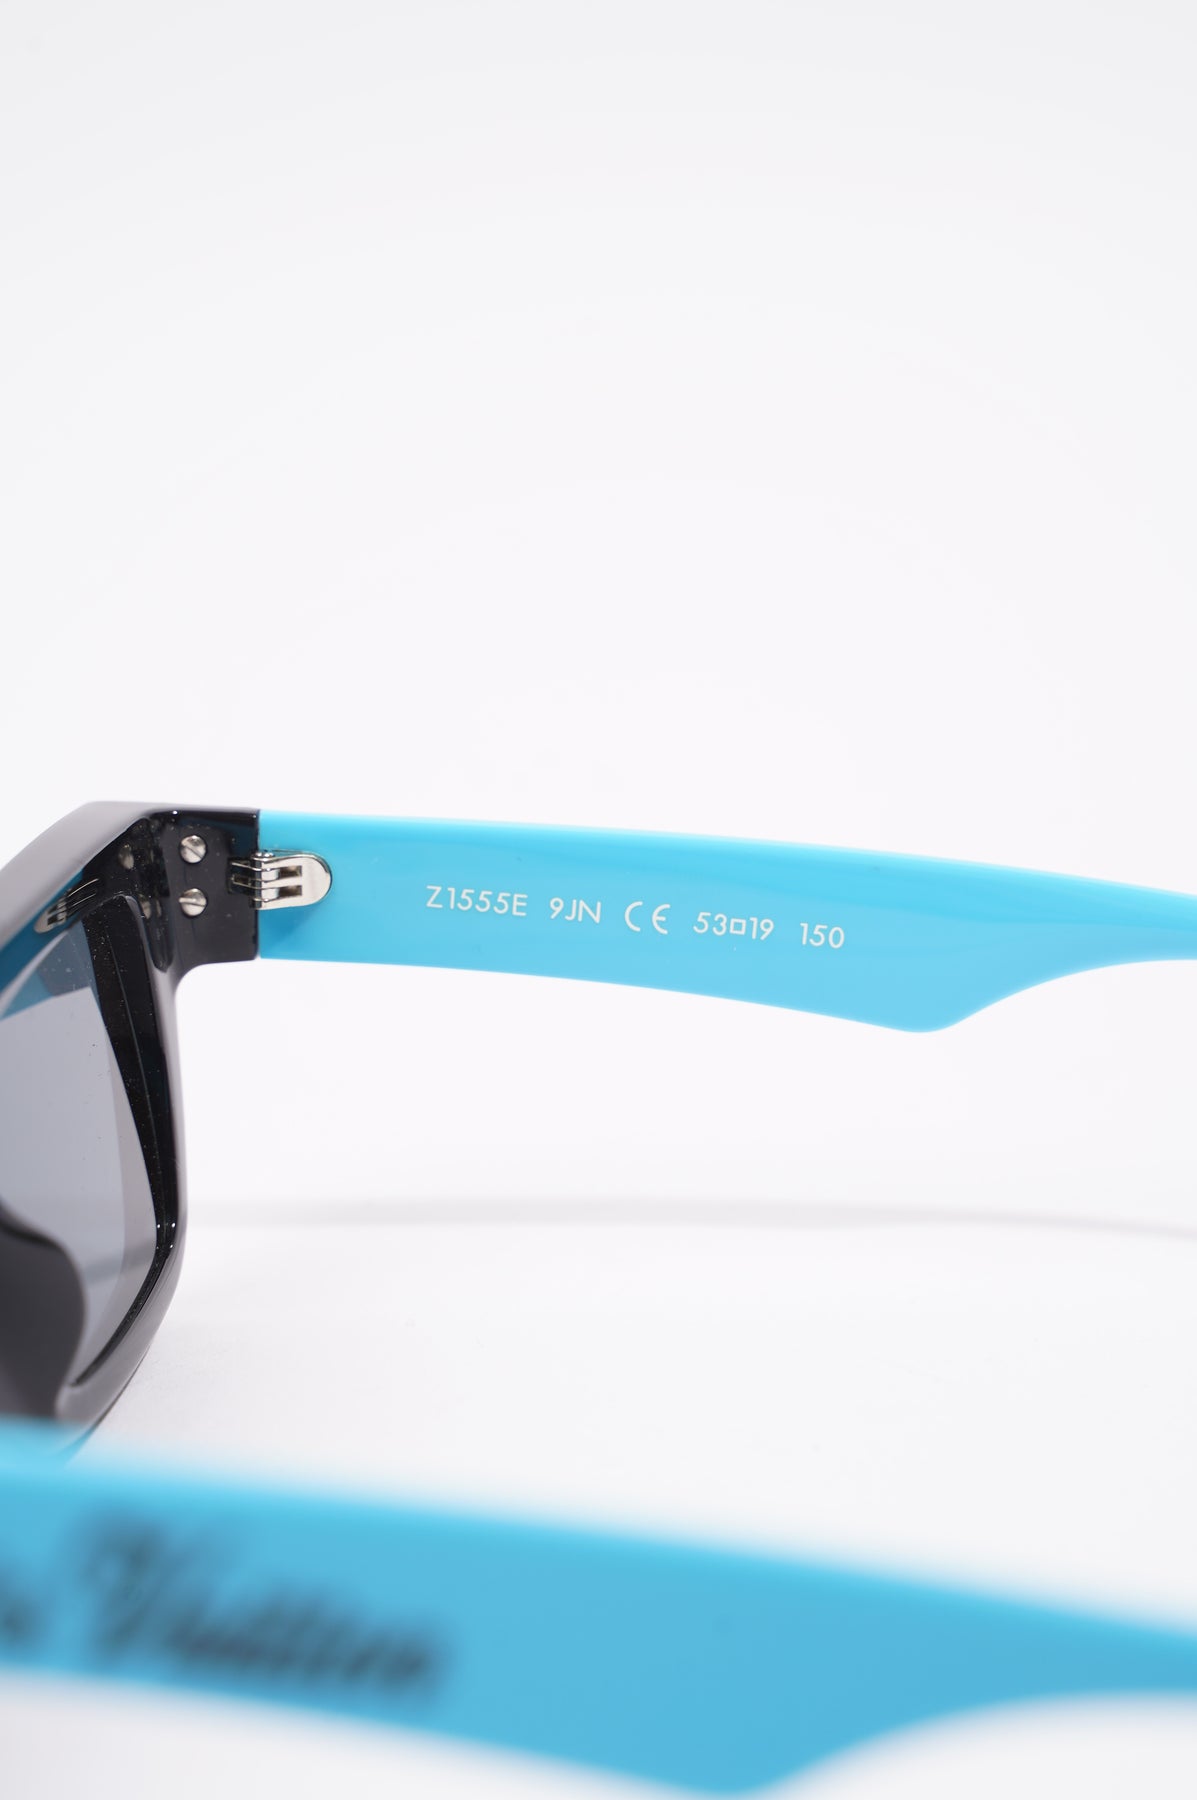 Louis Vuitton Blue/Black Foldable Sunglasses Z0827W